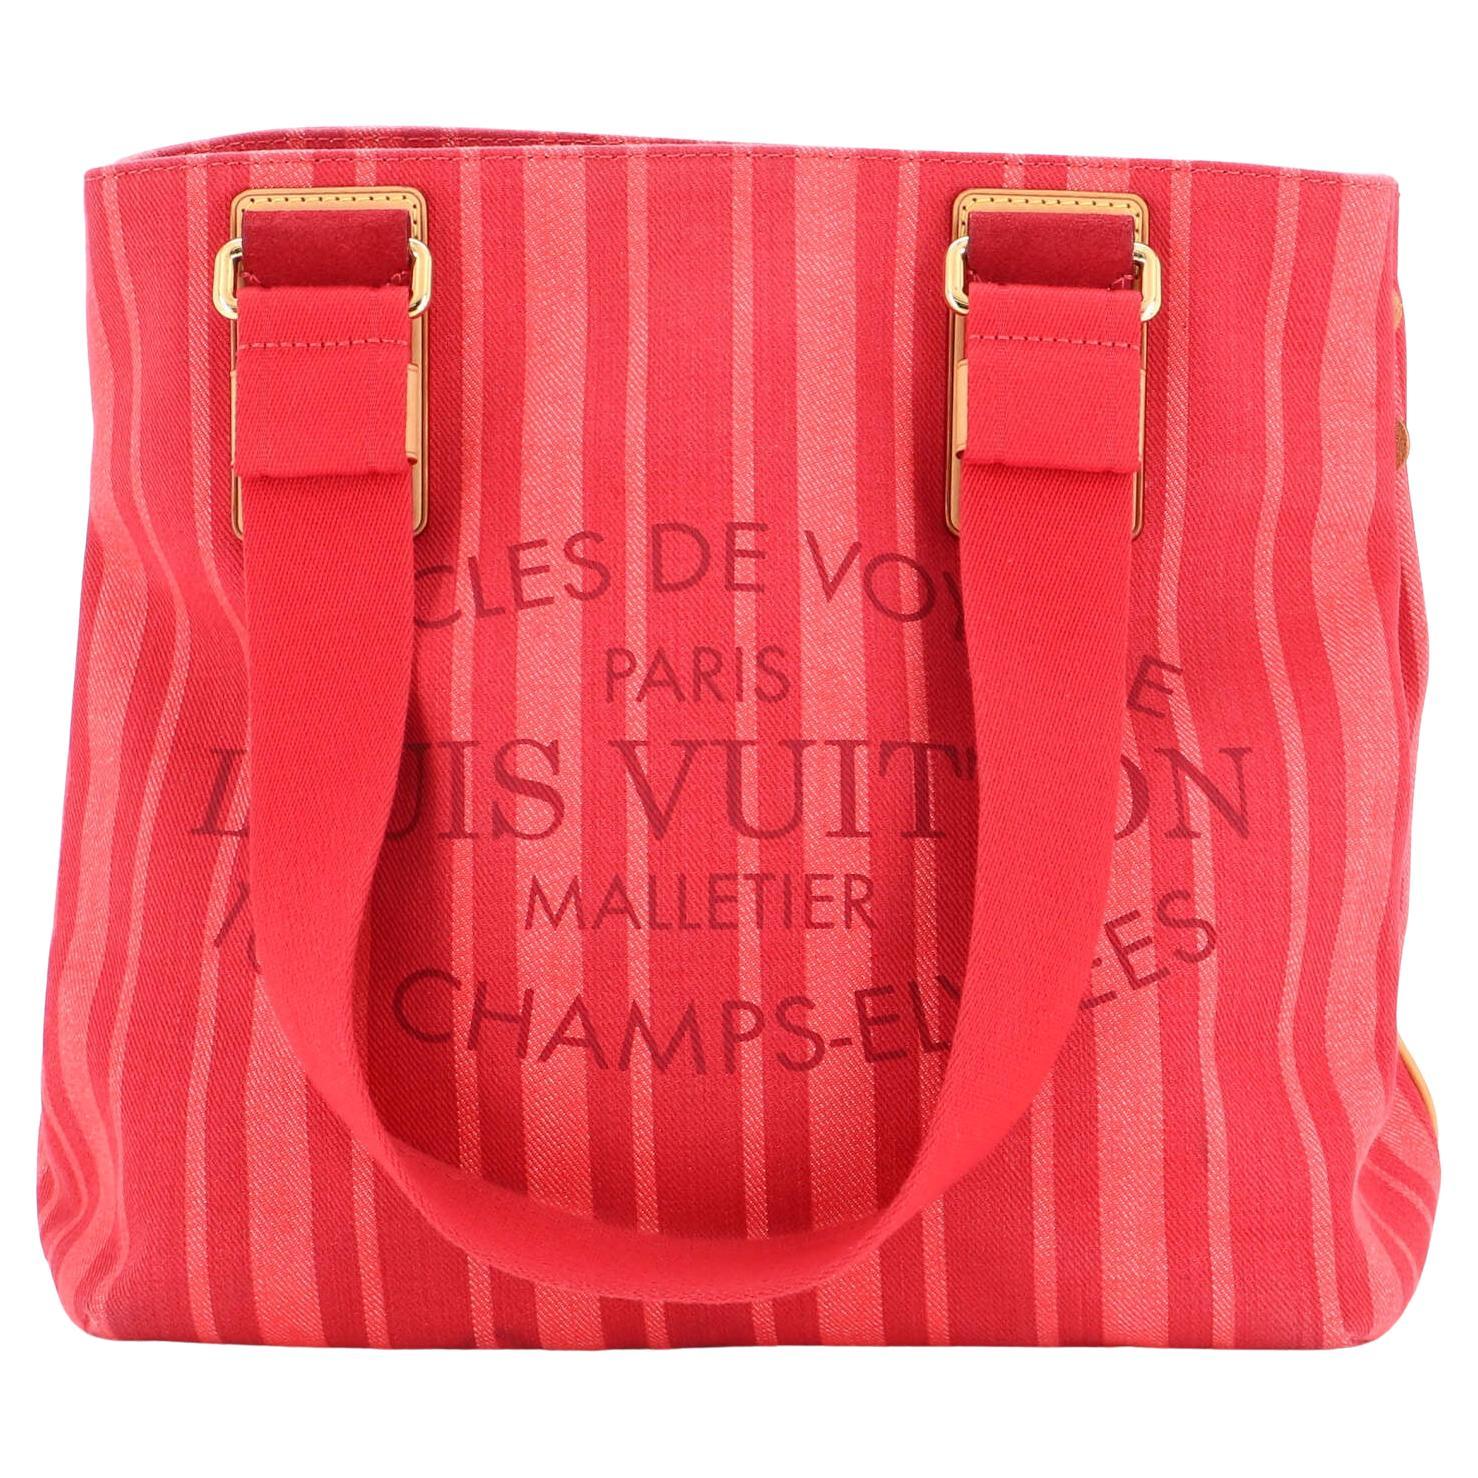 Louis Vuitton Articles de Voyage Cabas MM - Neutrals Totes, Handbags -  LOU638446